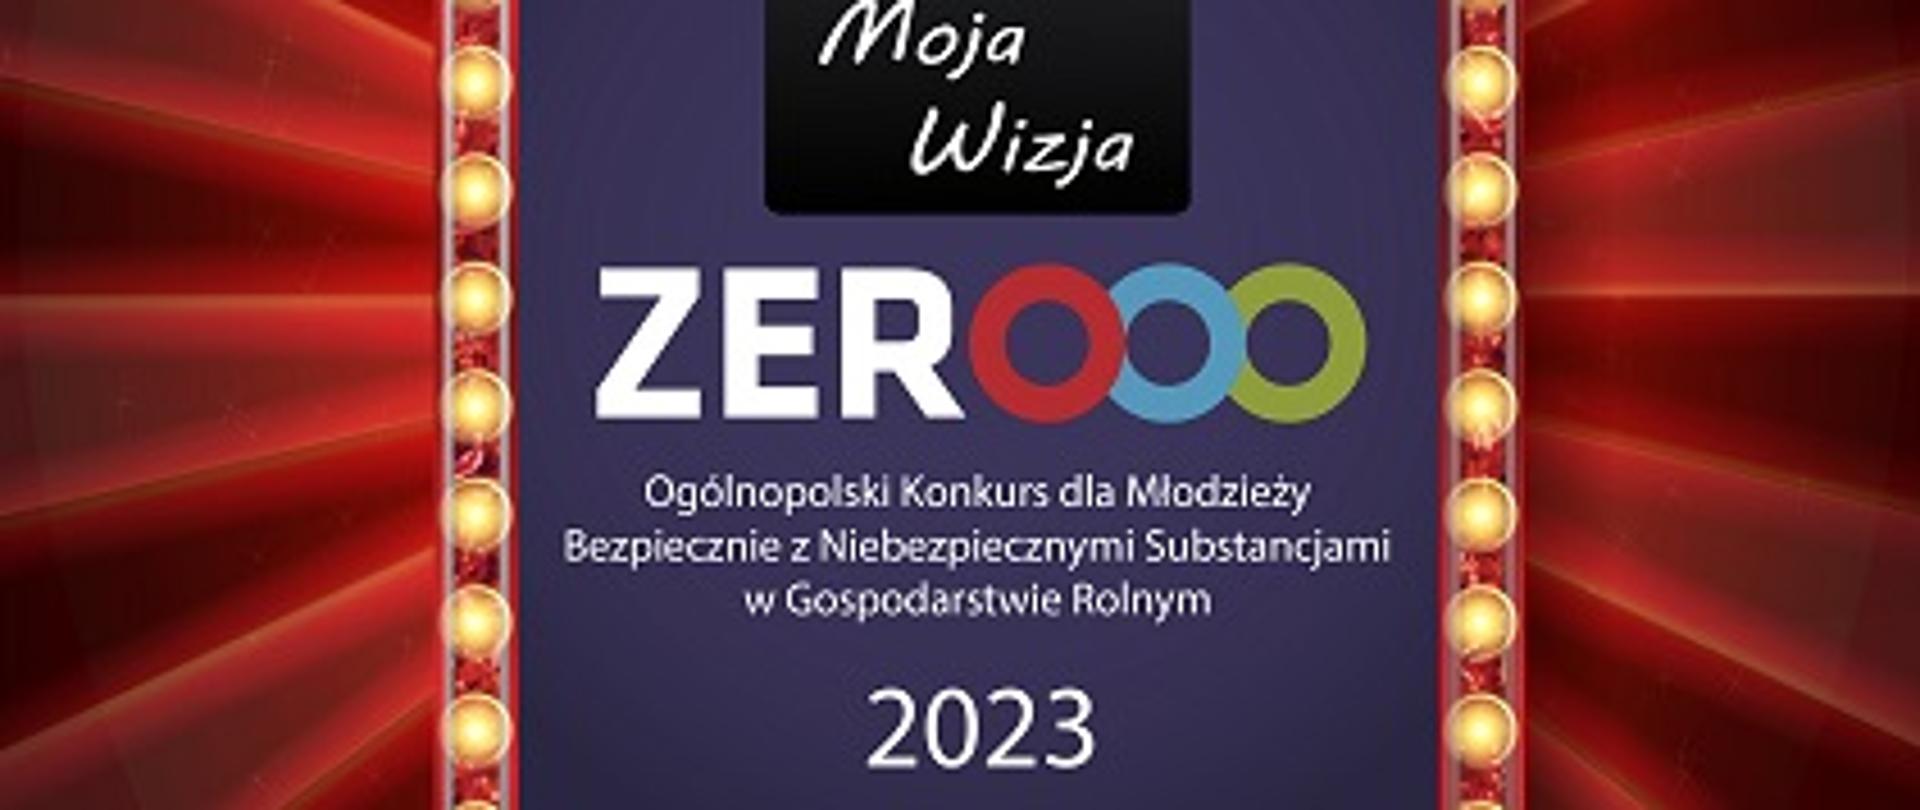 Plakat - napis zero